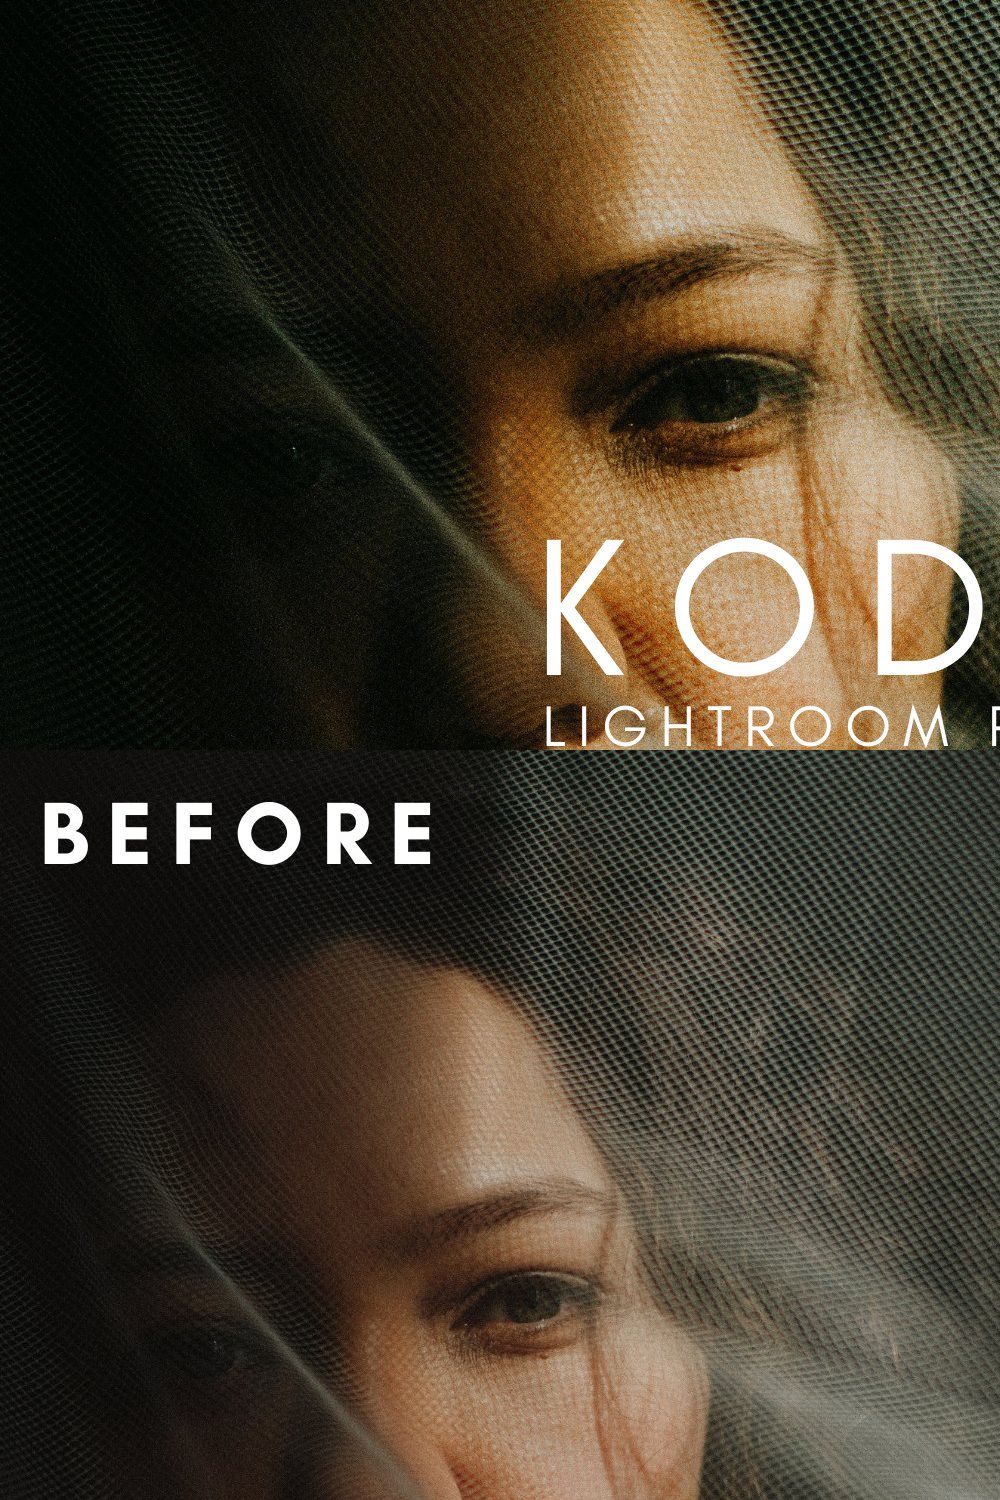 32 Kodak Gold Lightroom Presets pinterest preview image.